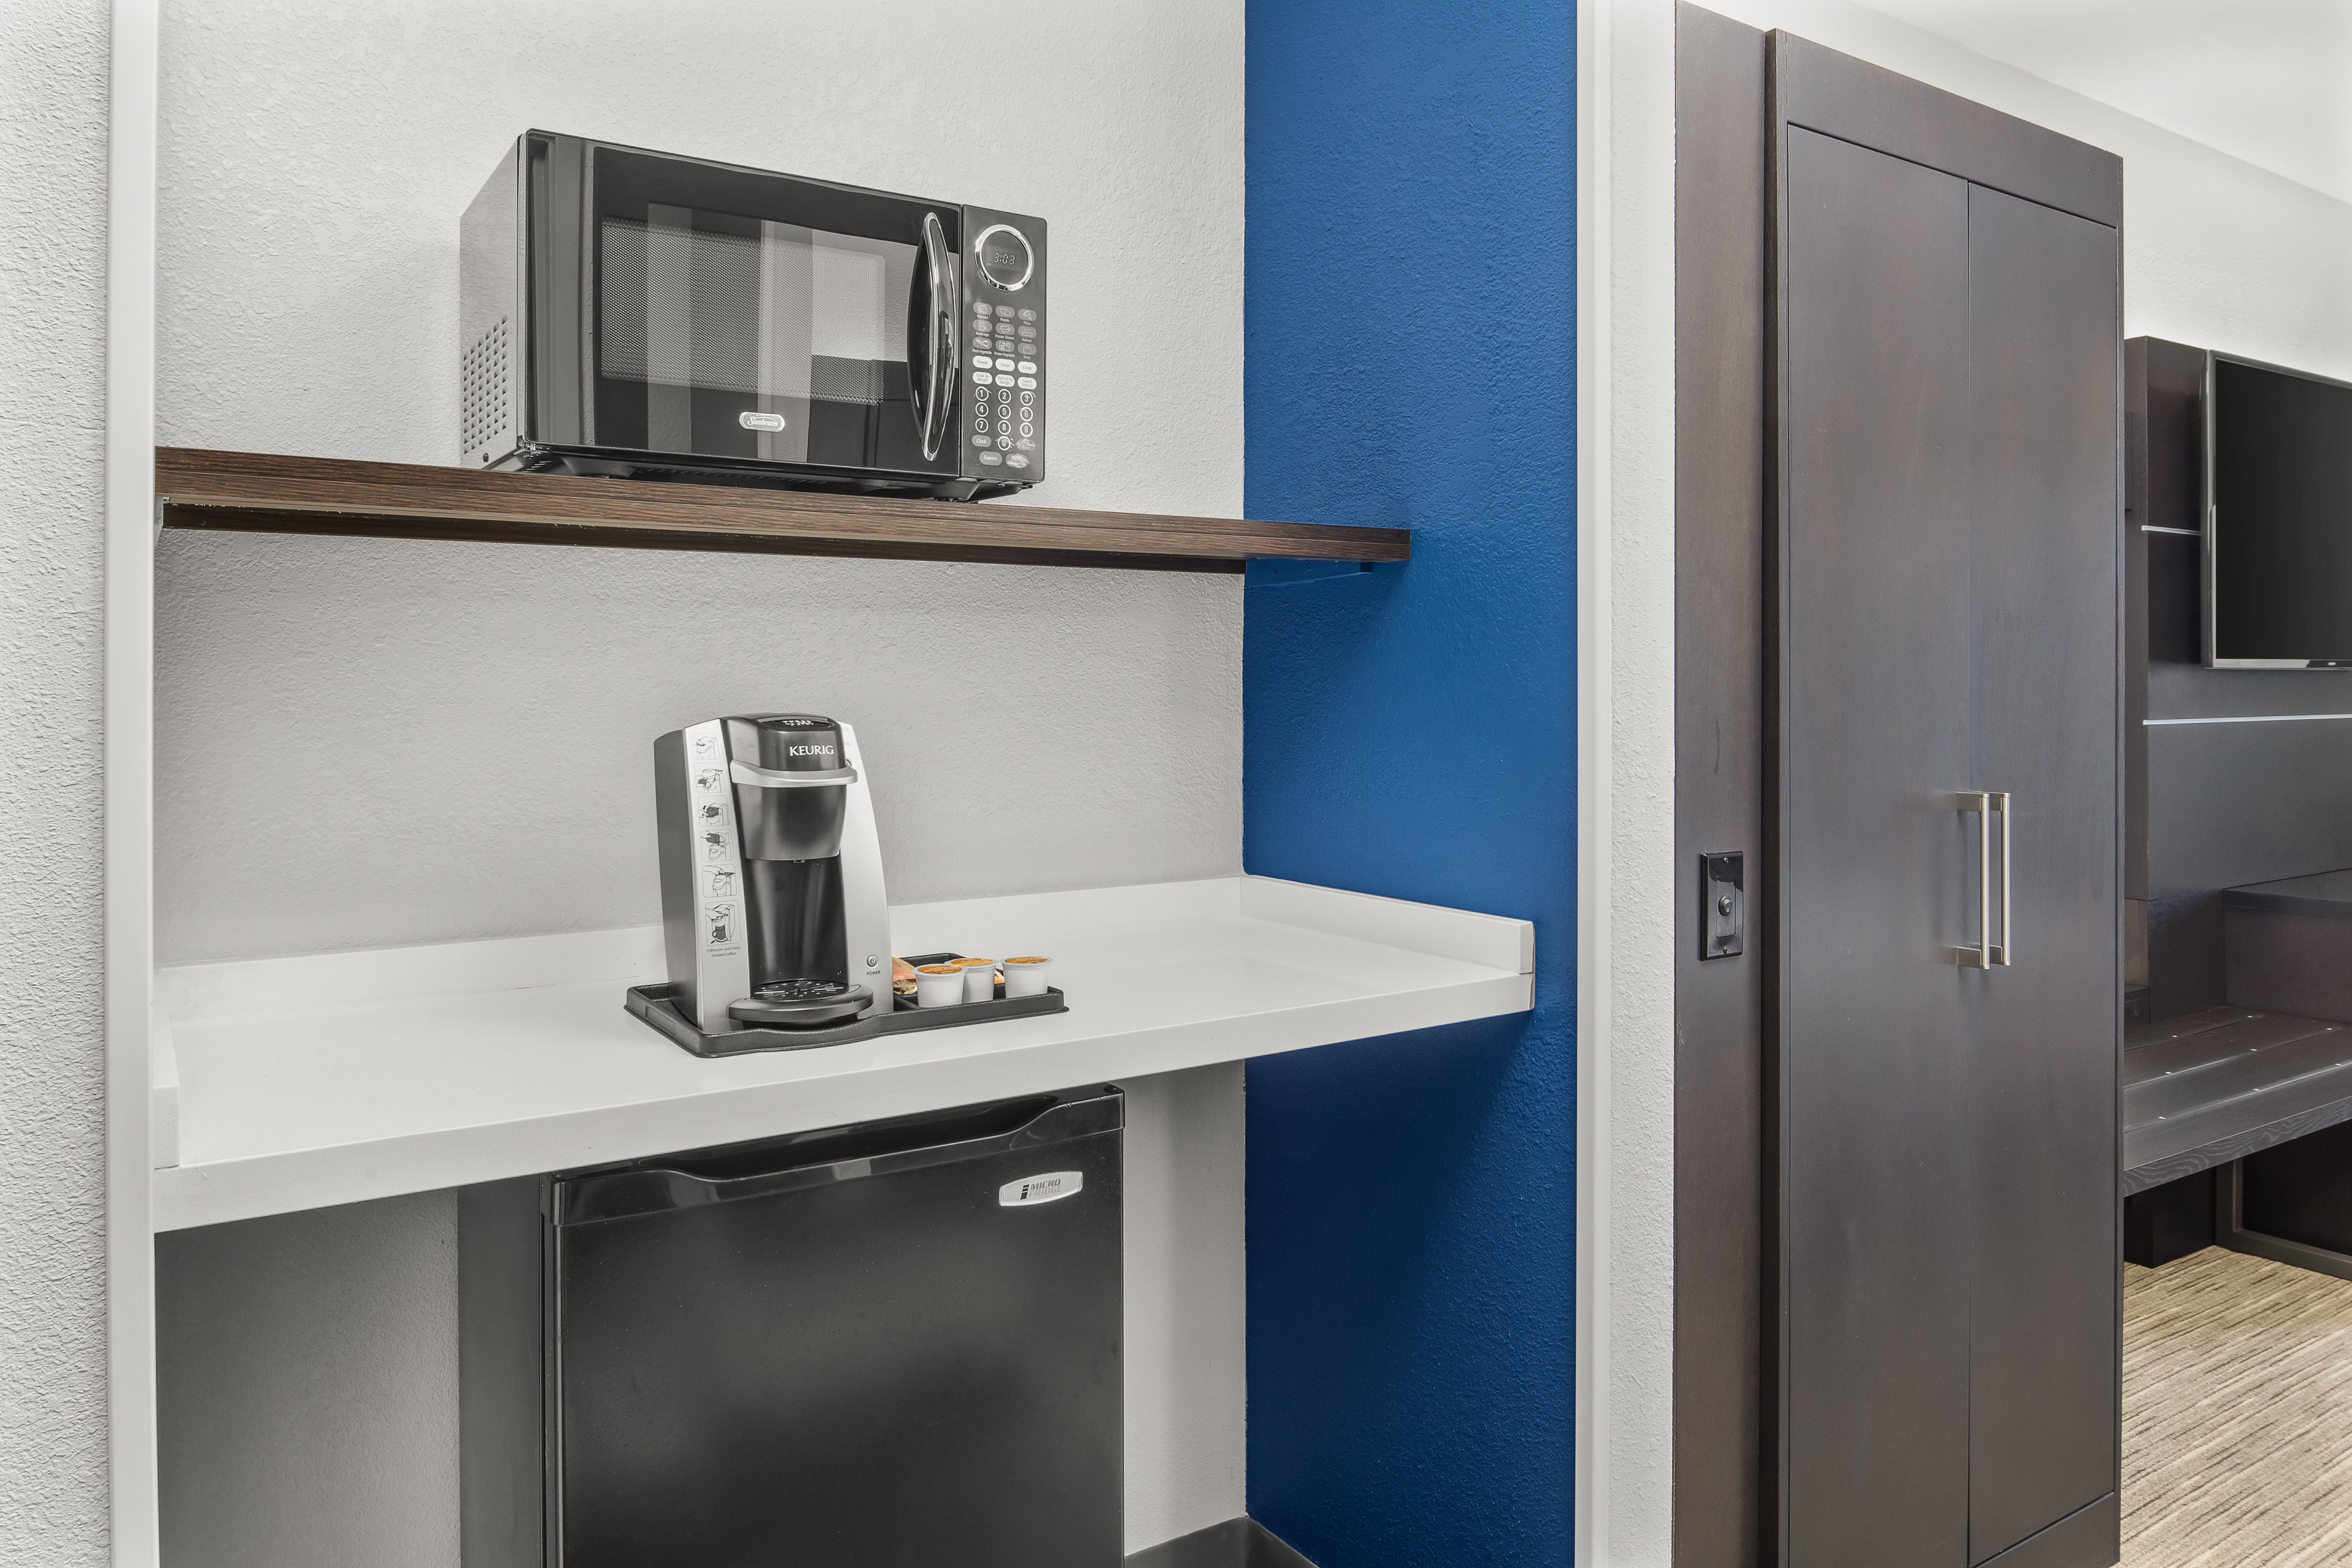 Keurig Coffee, Microwave, and fridge in all guest room